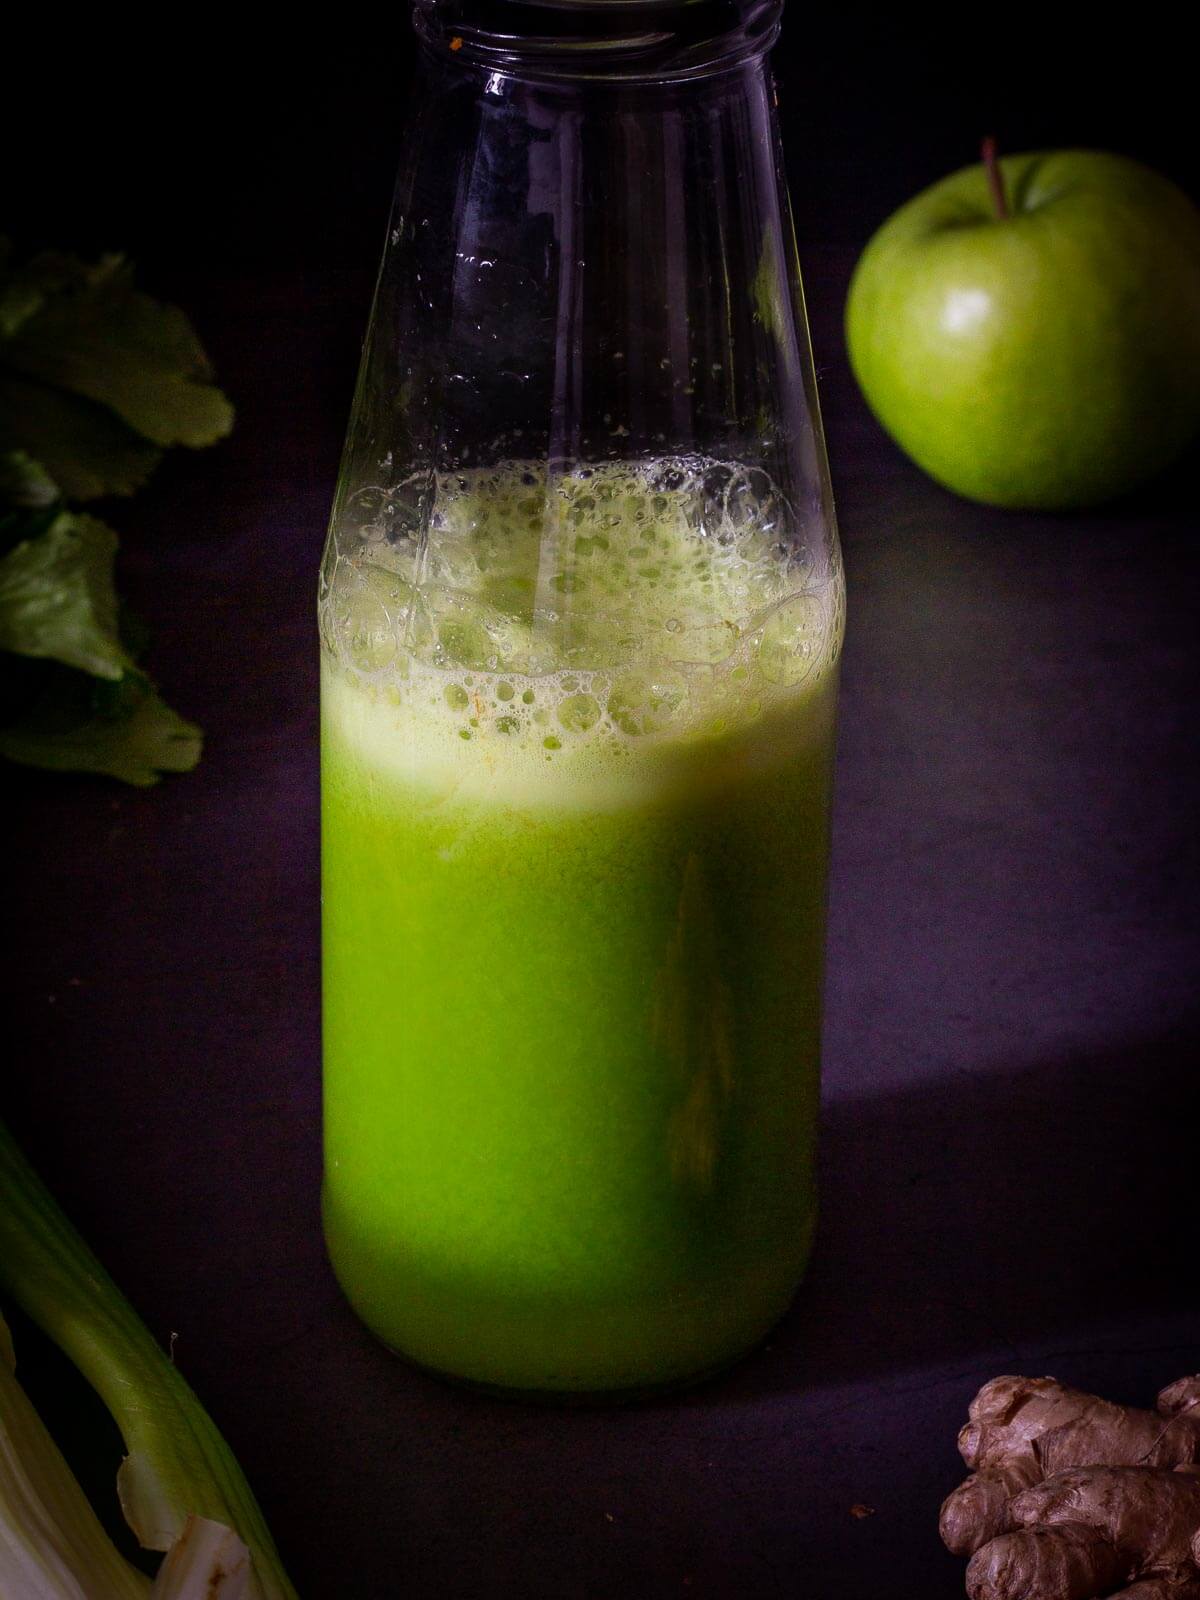 Bottle of Morning Celery Juice